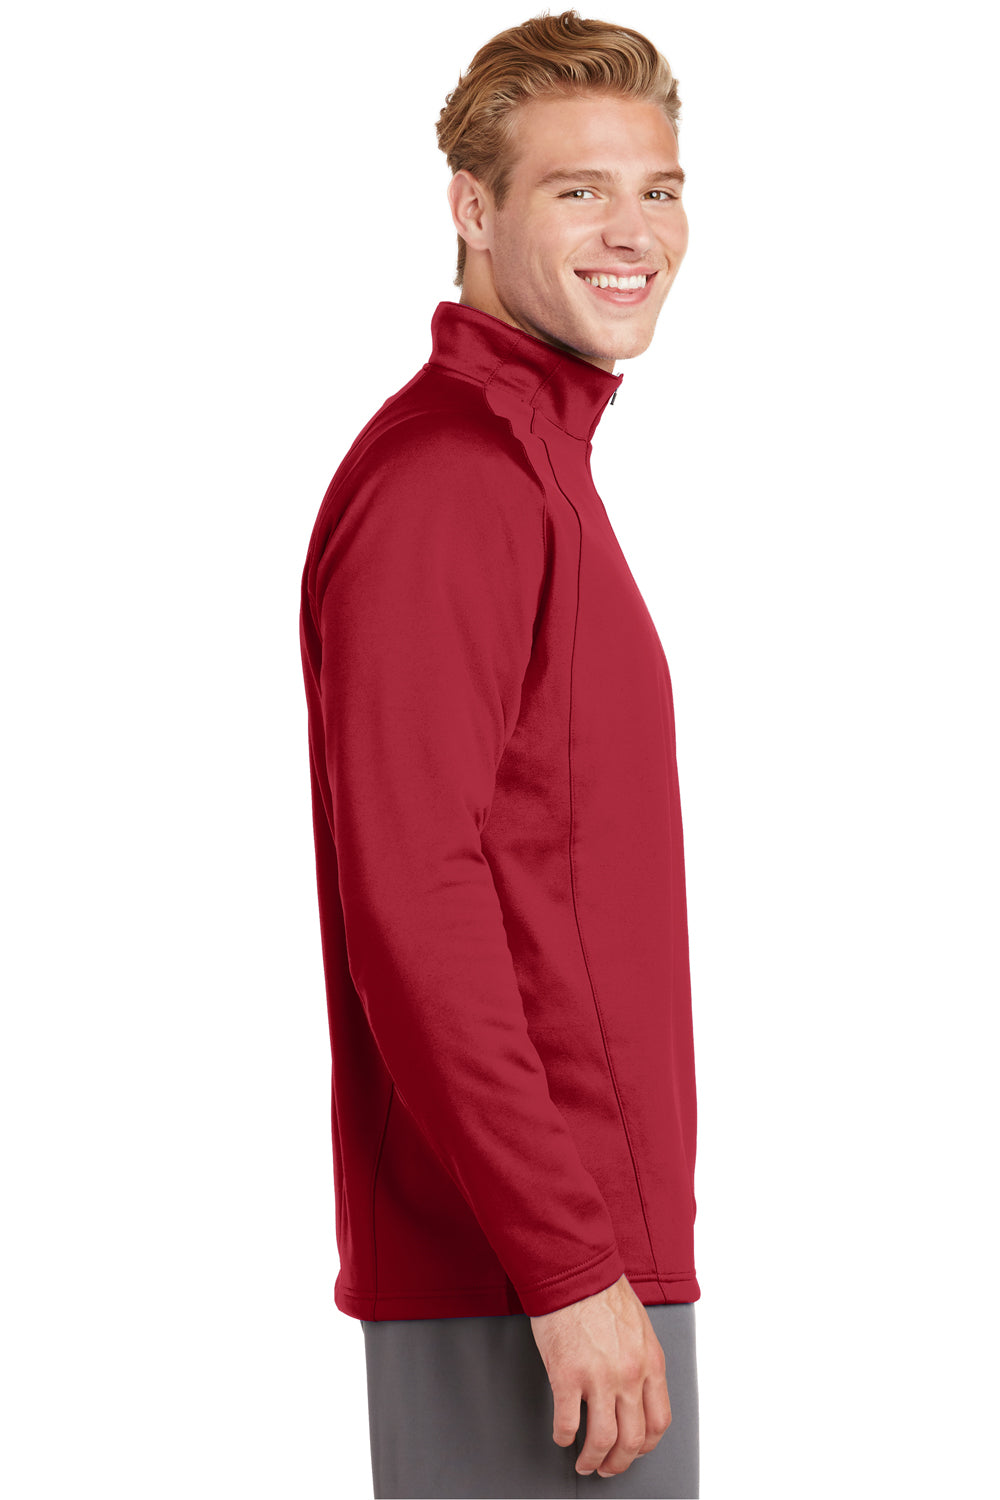 Sport-Tek F243 Mens Sport-Wick Moisture Wicking Fleece 1/4 Zip Sweatshirt Red Side